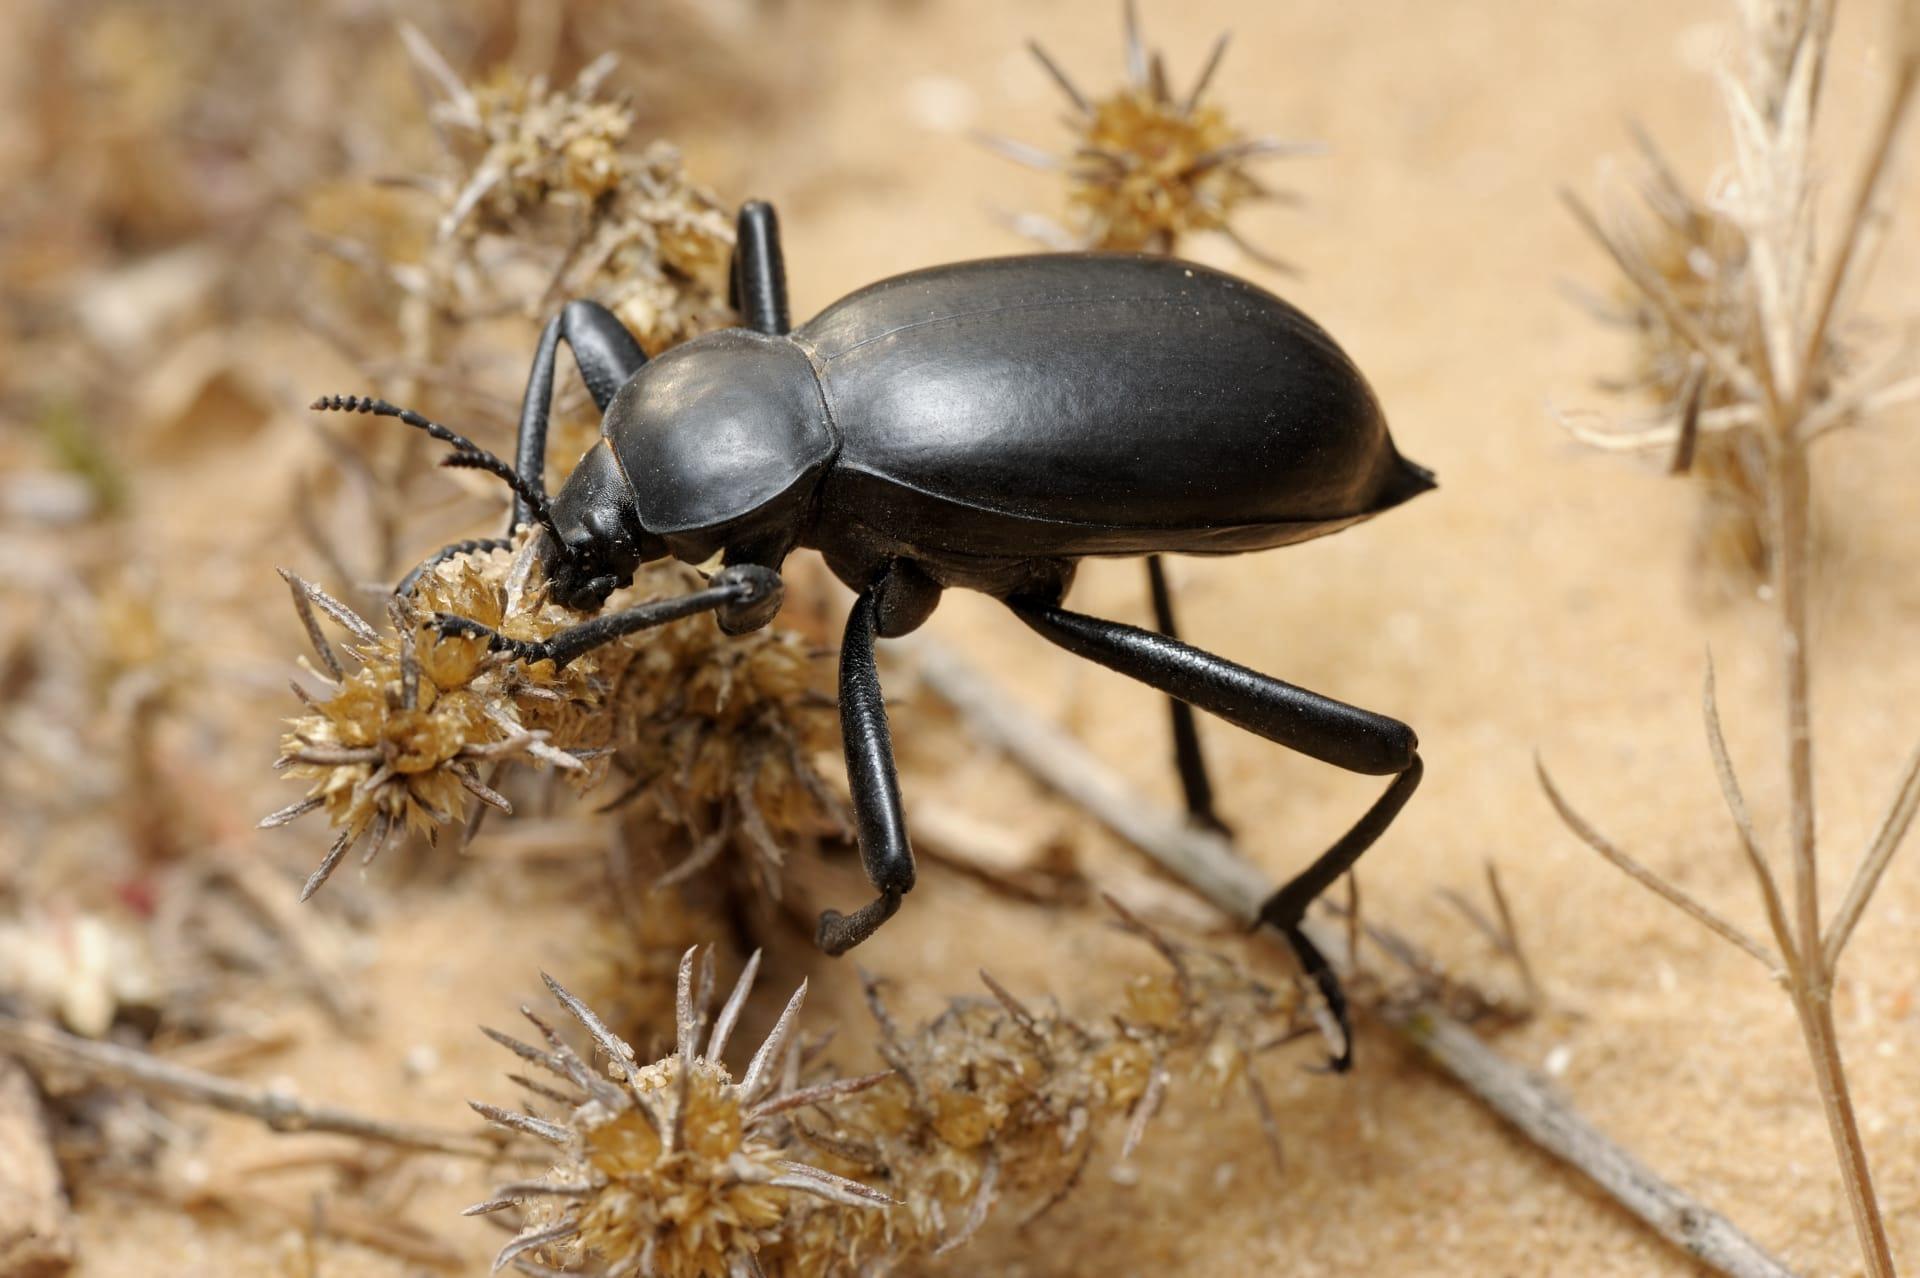 Darkling beetle pictures